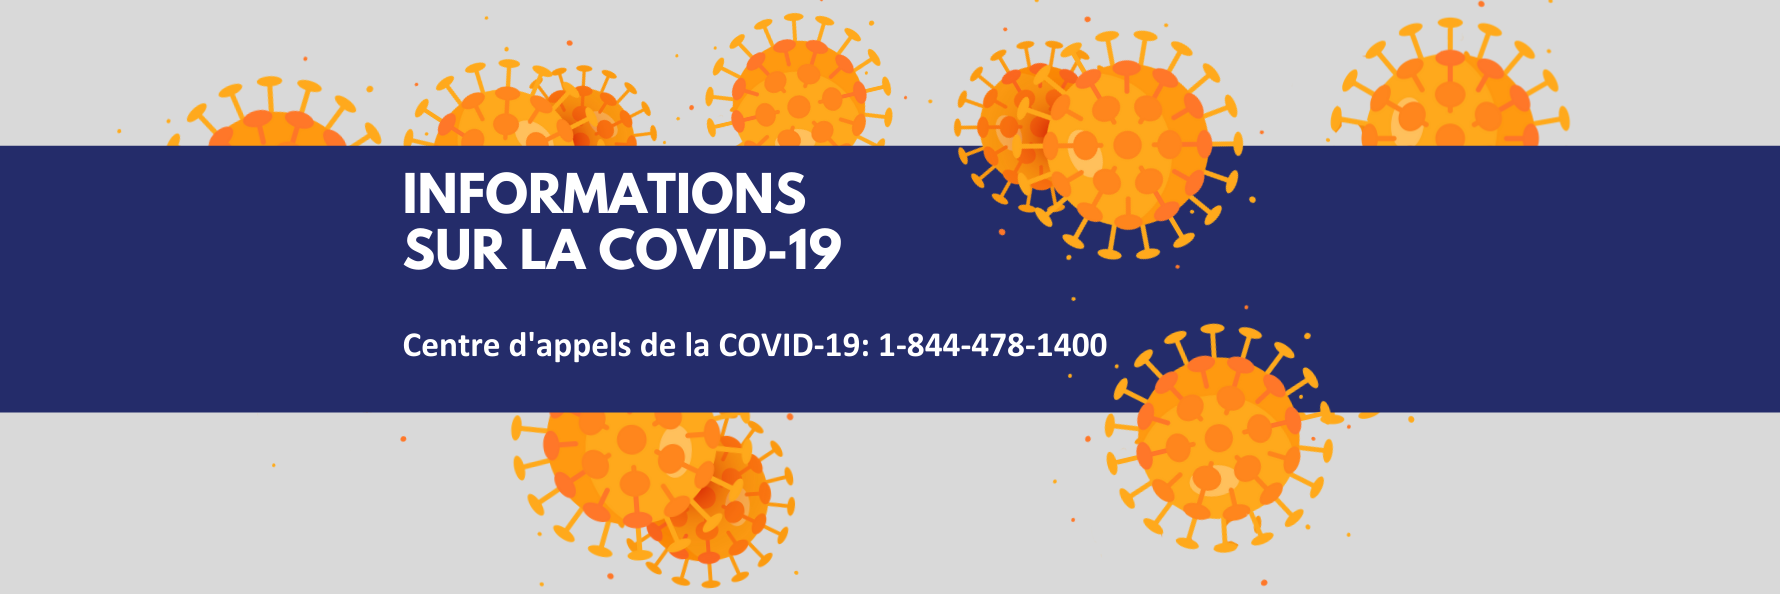 Informations sur la COVID-19